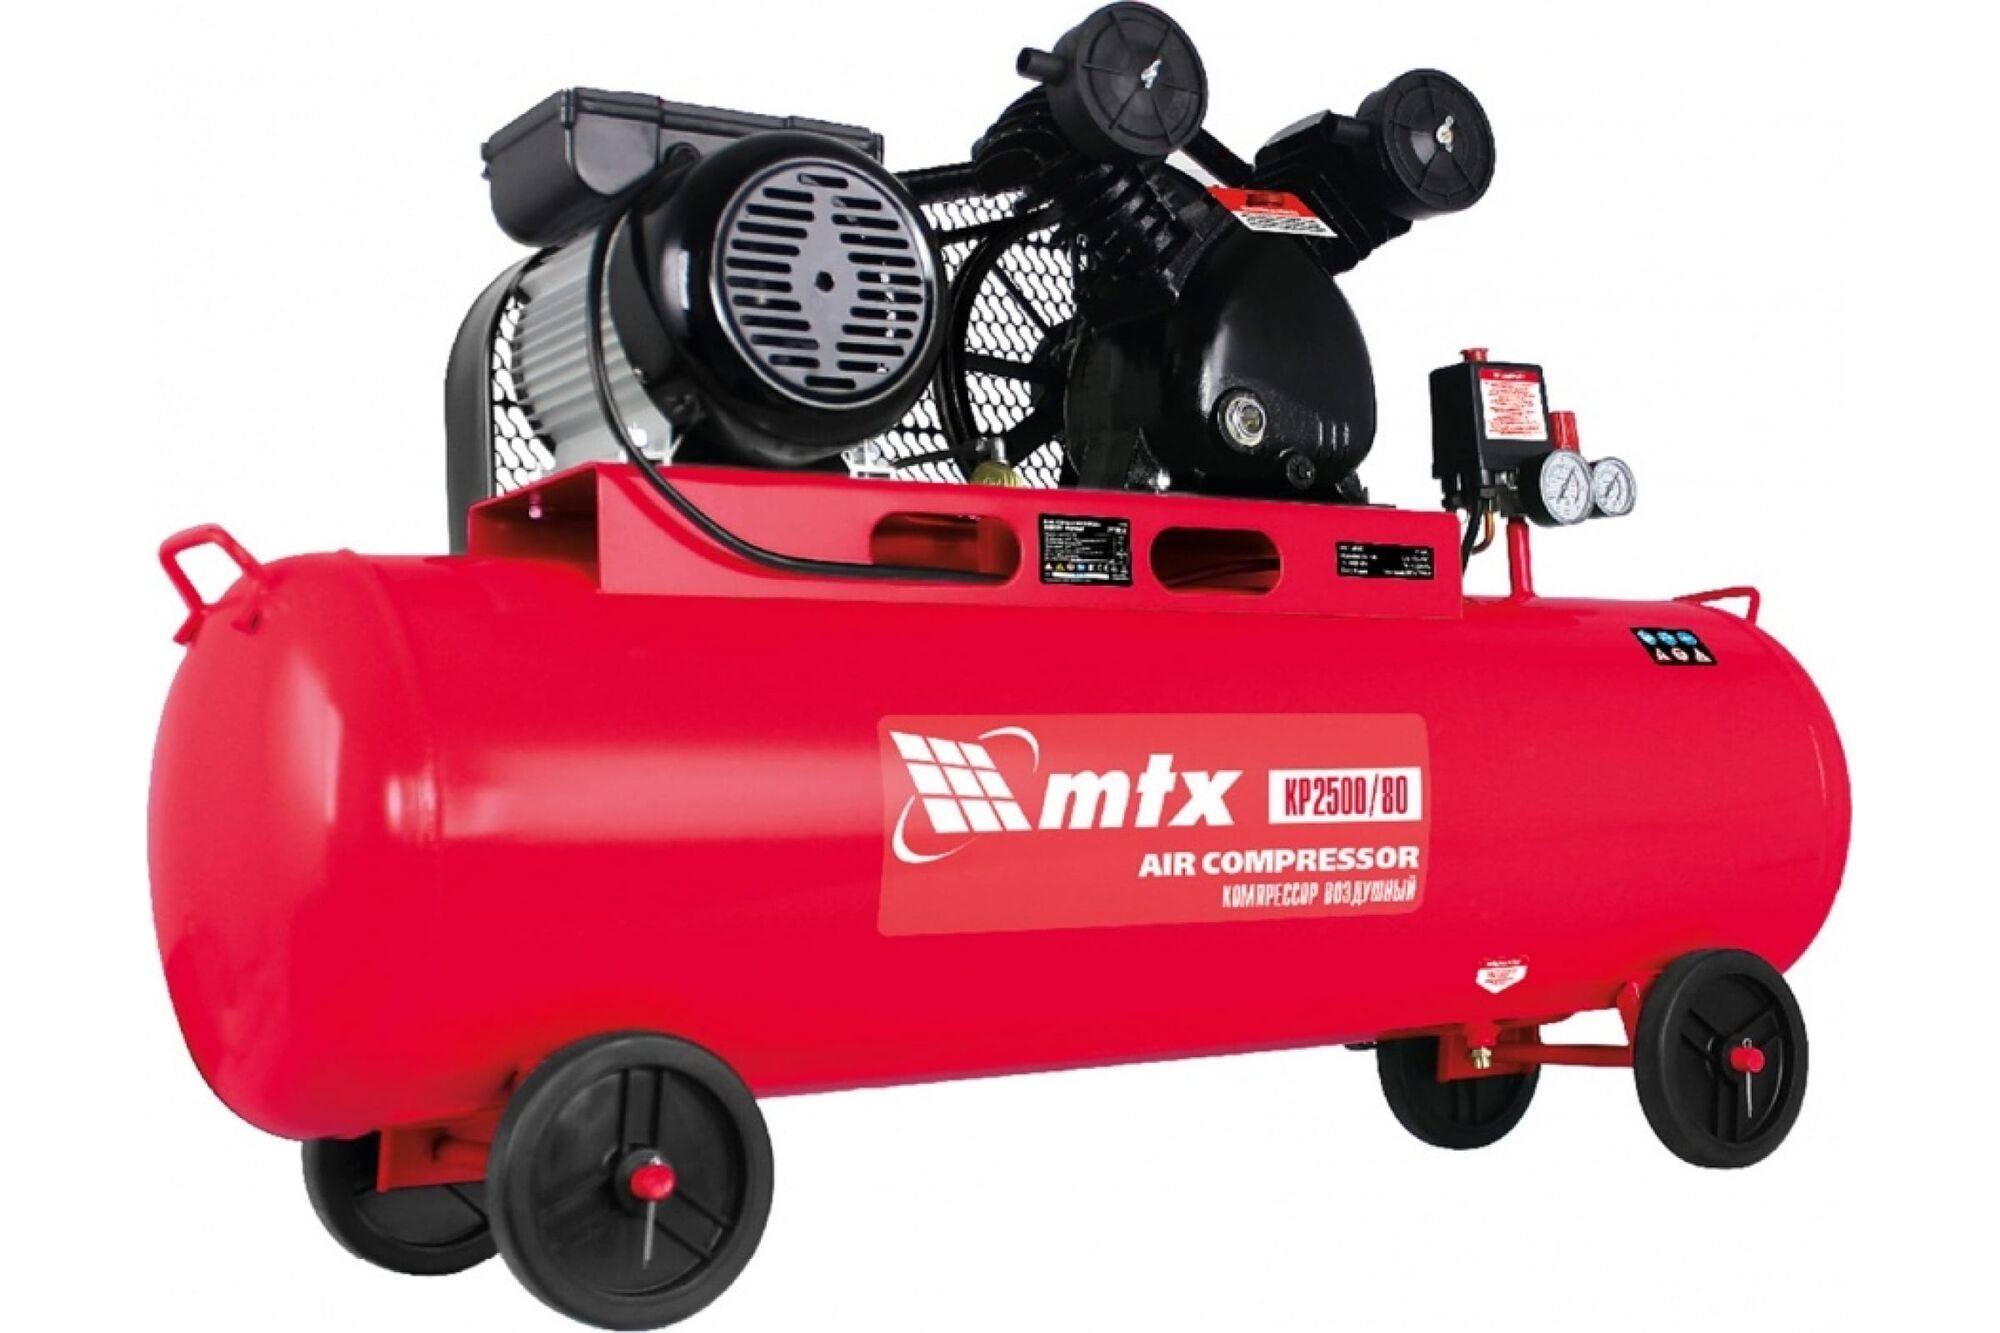 Воздушный ременной привод компрессор МТХ КР2500/80, 2,5 кВт, 80 литров, 420 л/мин 58047 MTX 2